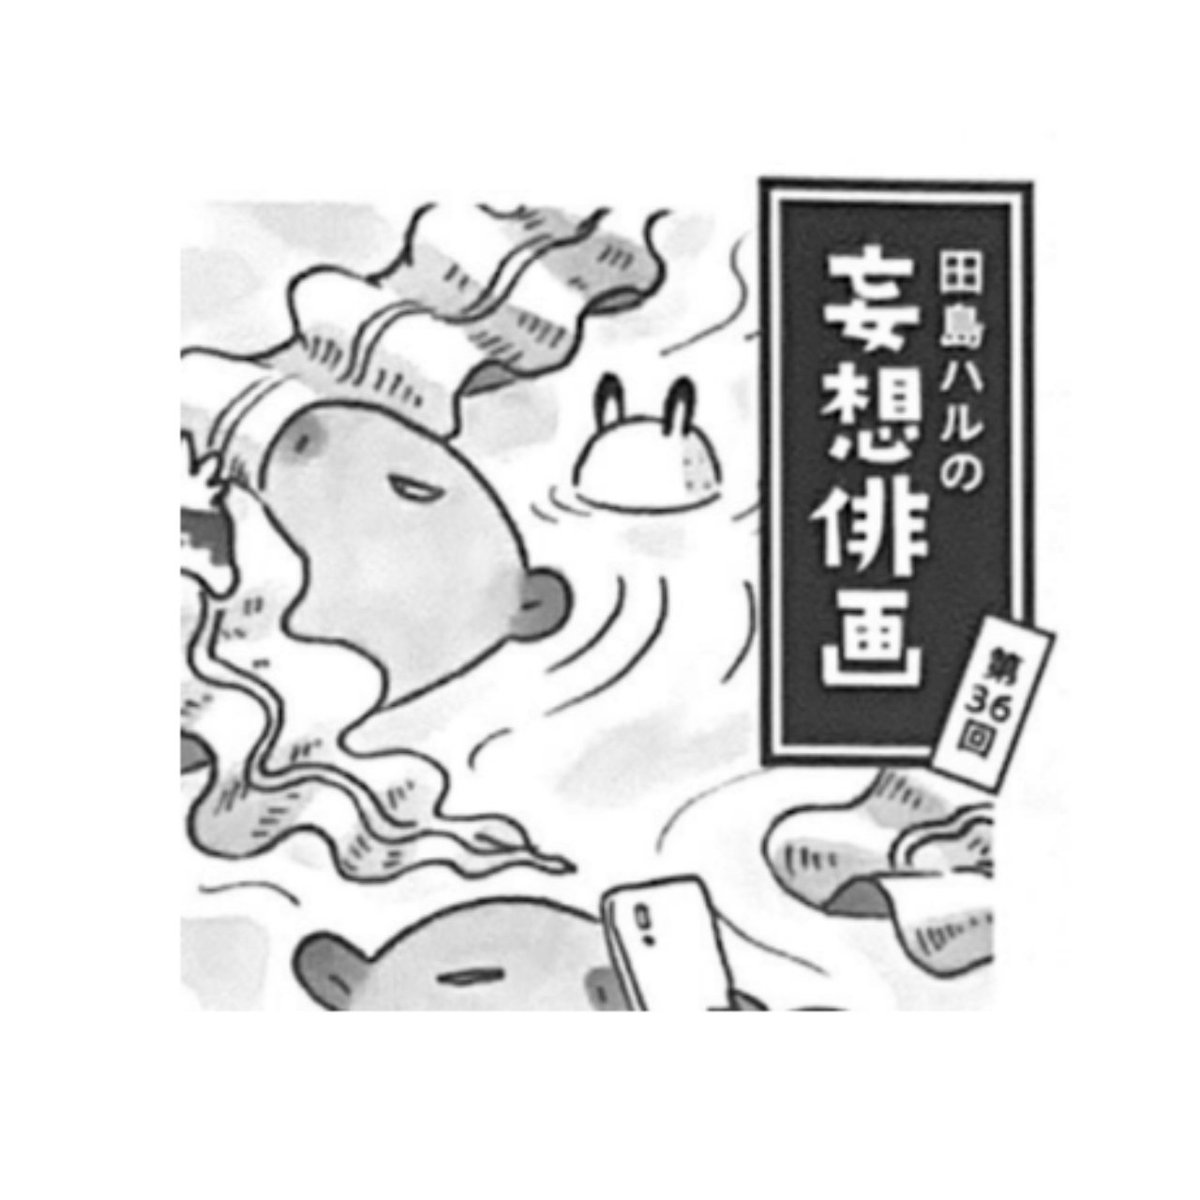 角川「俳句」7月号発売中。#田島ハルの妄想俳画 第36回目載ってます。今回は田島健一さまの句から俳画とエッセイを書きました。想像すればするほど深みにはまる田島健一さんの作品。ほんとうに自由に描かせていただきました。